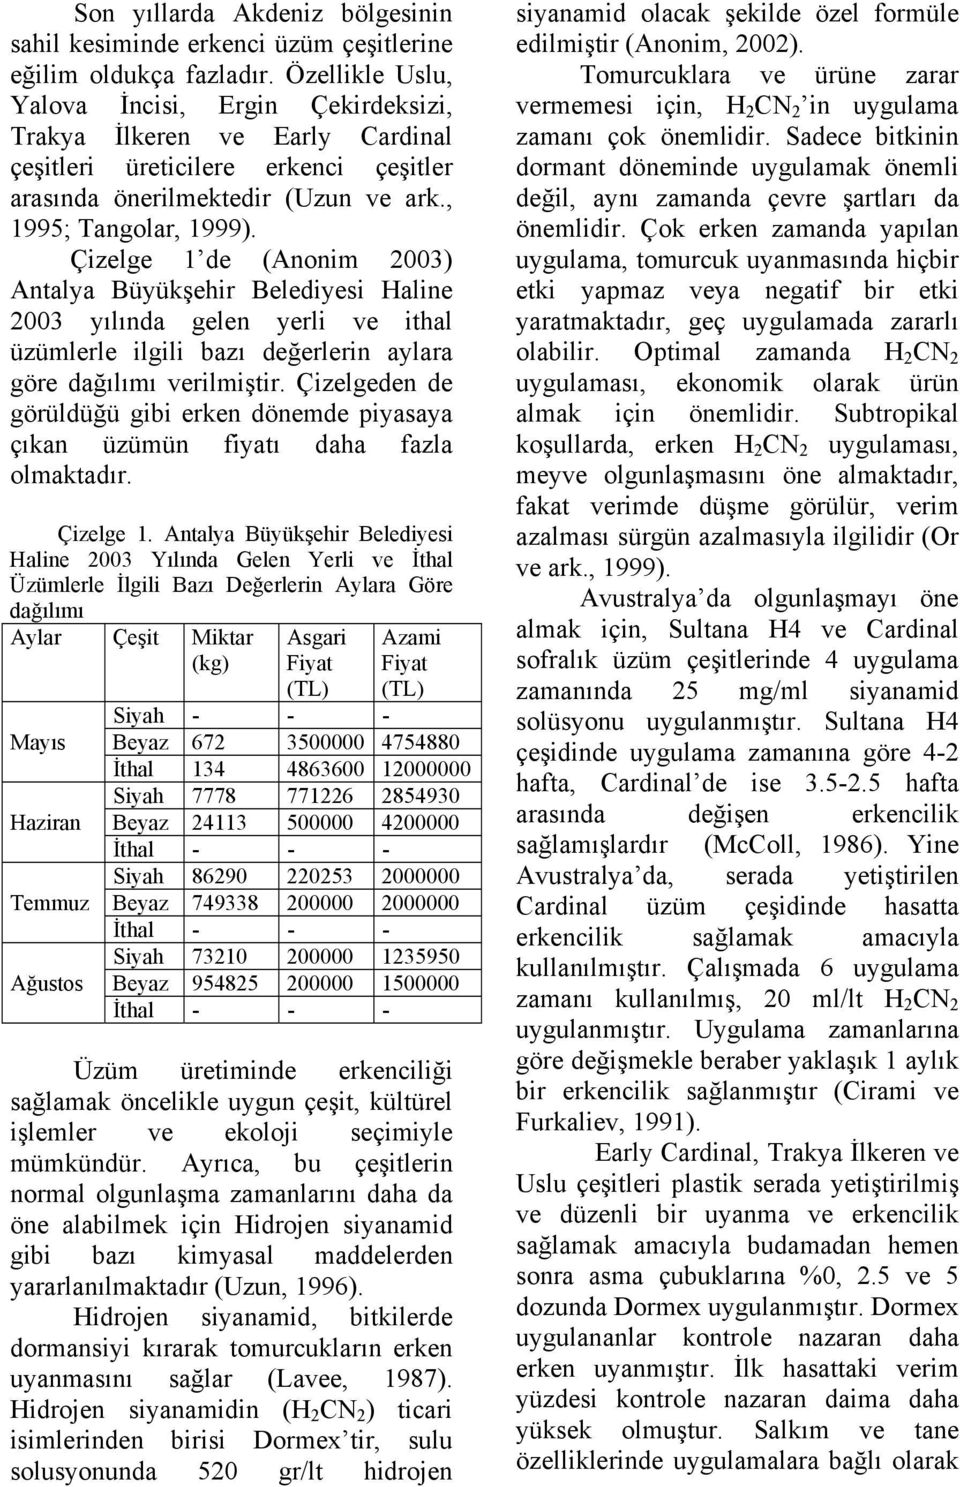 Çizelge 1 de (Anonim 2003) Antalya Büyükşehir Belediyesi Haline 2003 yılında gelen yerli ve ithal üzümlerle ilgili bazı değerlerin aylara göre dağılımı verilmiştir.